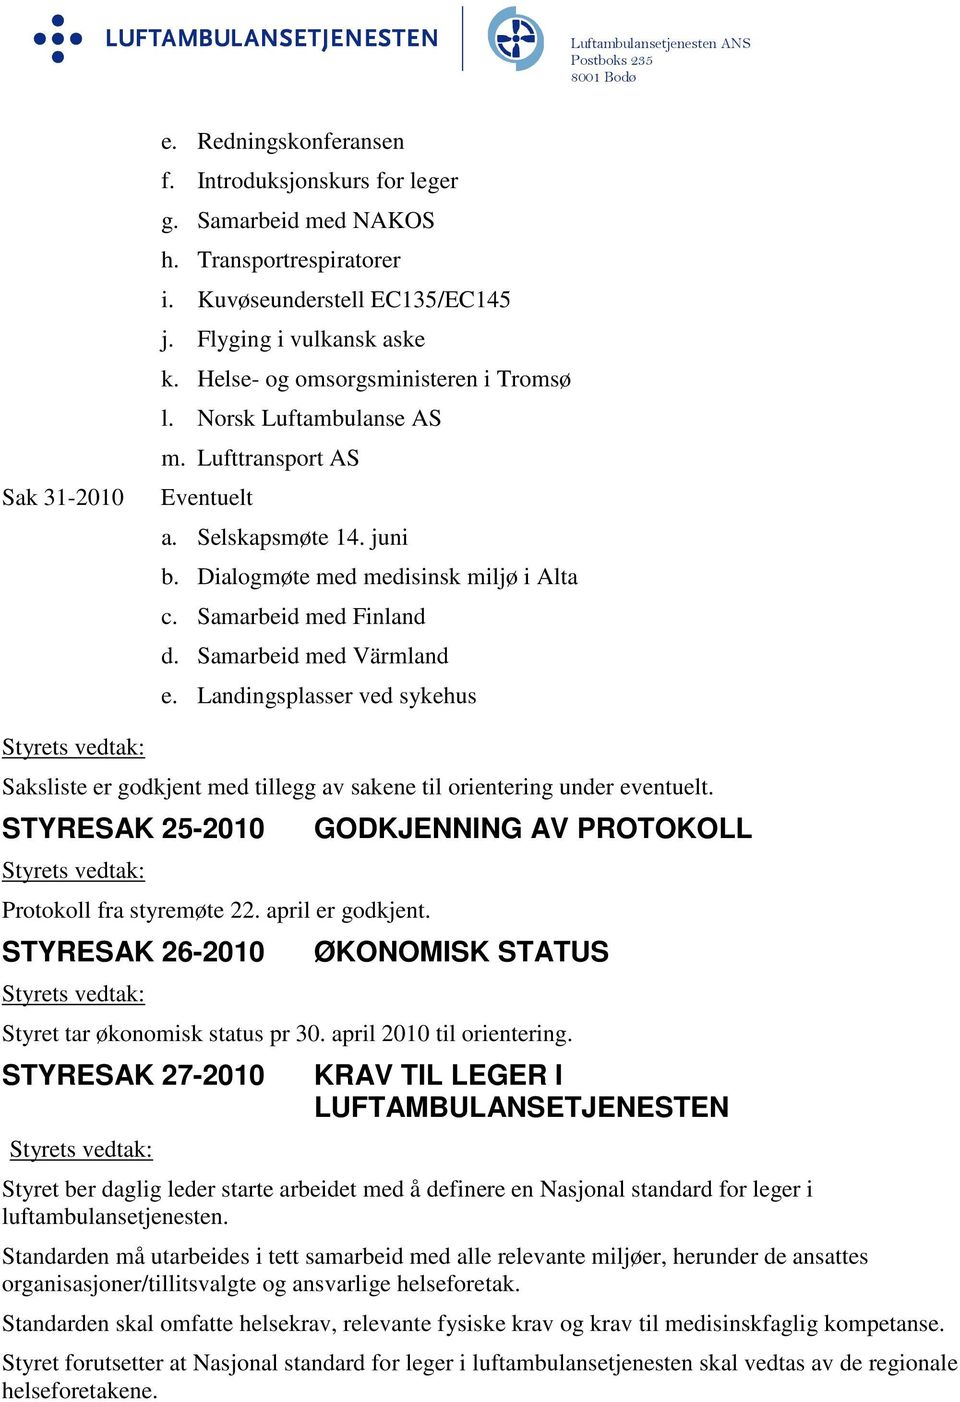 Samarbeid med Värmland e. Landingsplasser ved sykehus Saksliste er godkjent med tillegg av sakene til orientering under eventuelt. STYRESAK 25-2010 Protokoll fra styremøte 22. april er godkjent.